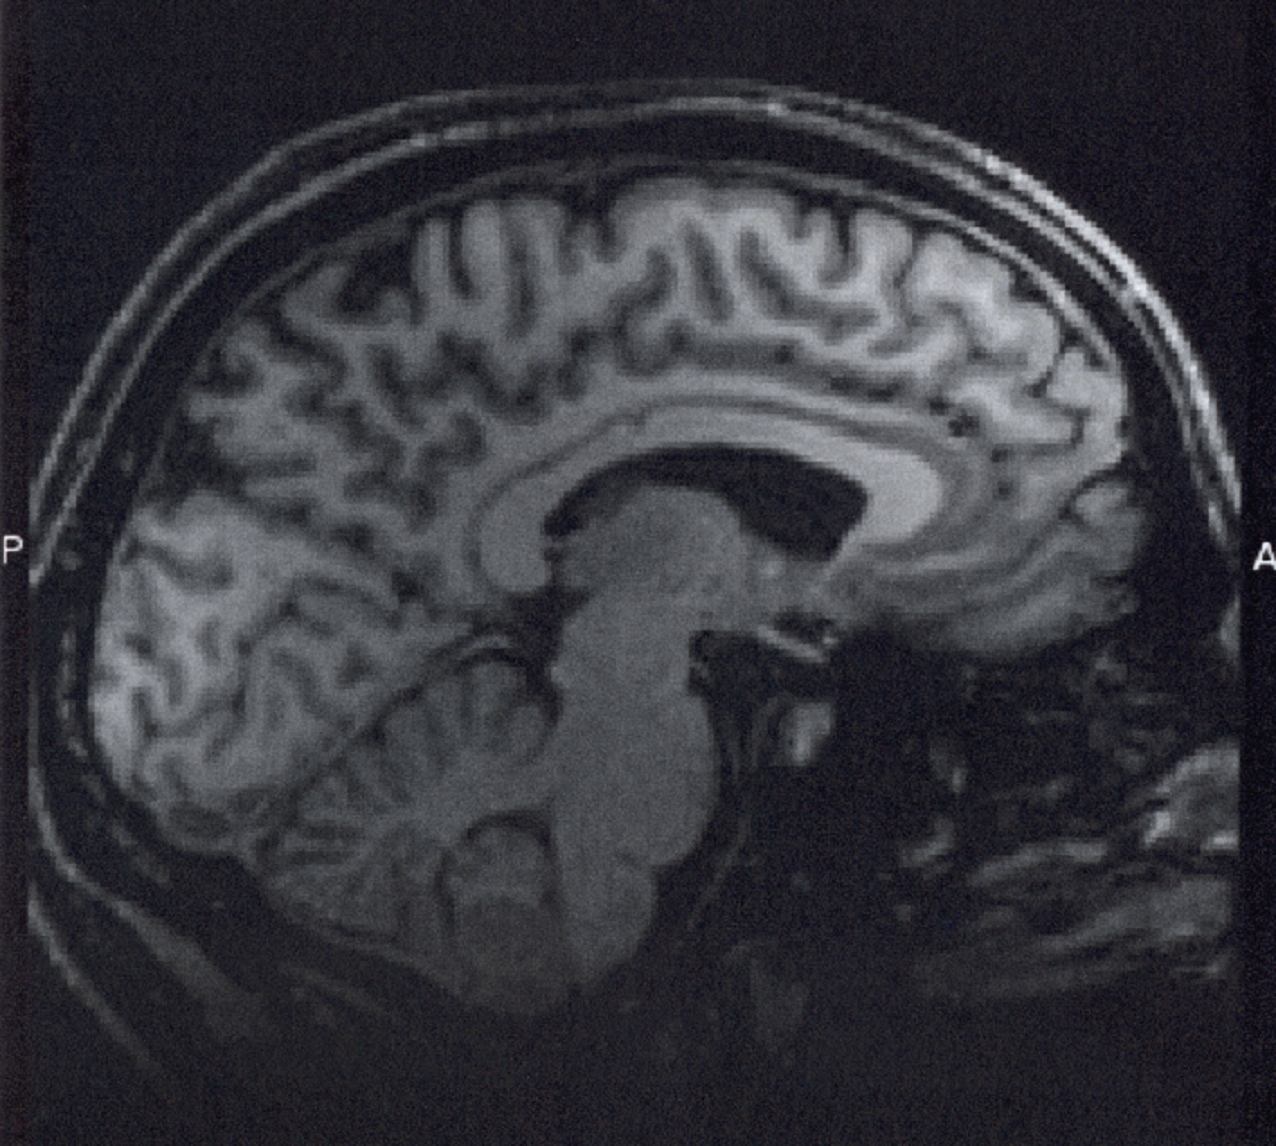 Resonancia magnética de cerebro. Imagen: Nathanial Burton-Bradford. Fuente: Flickr.